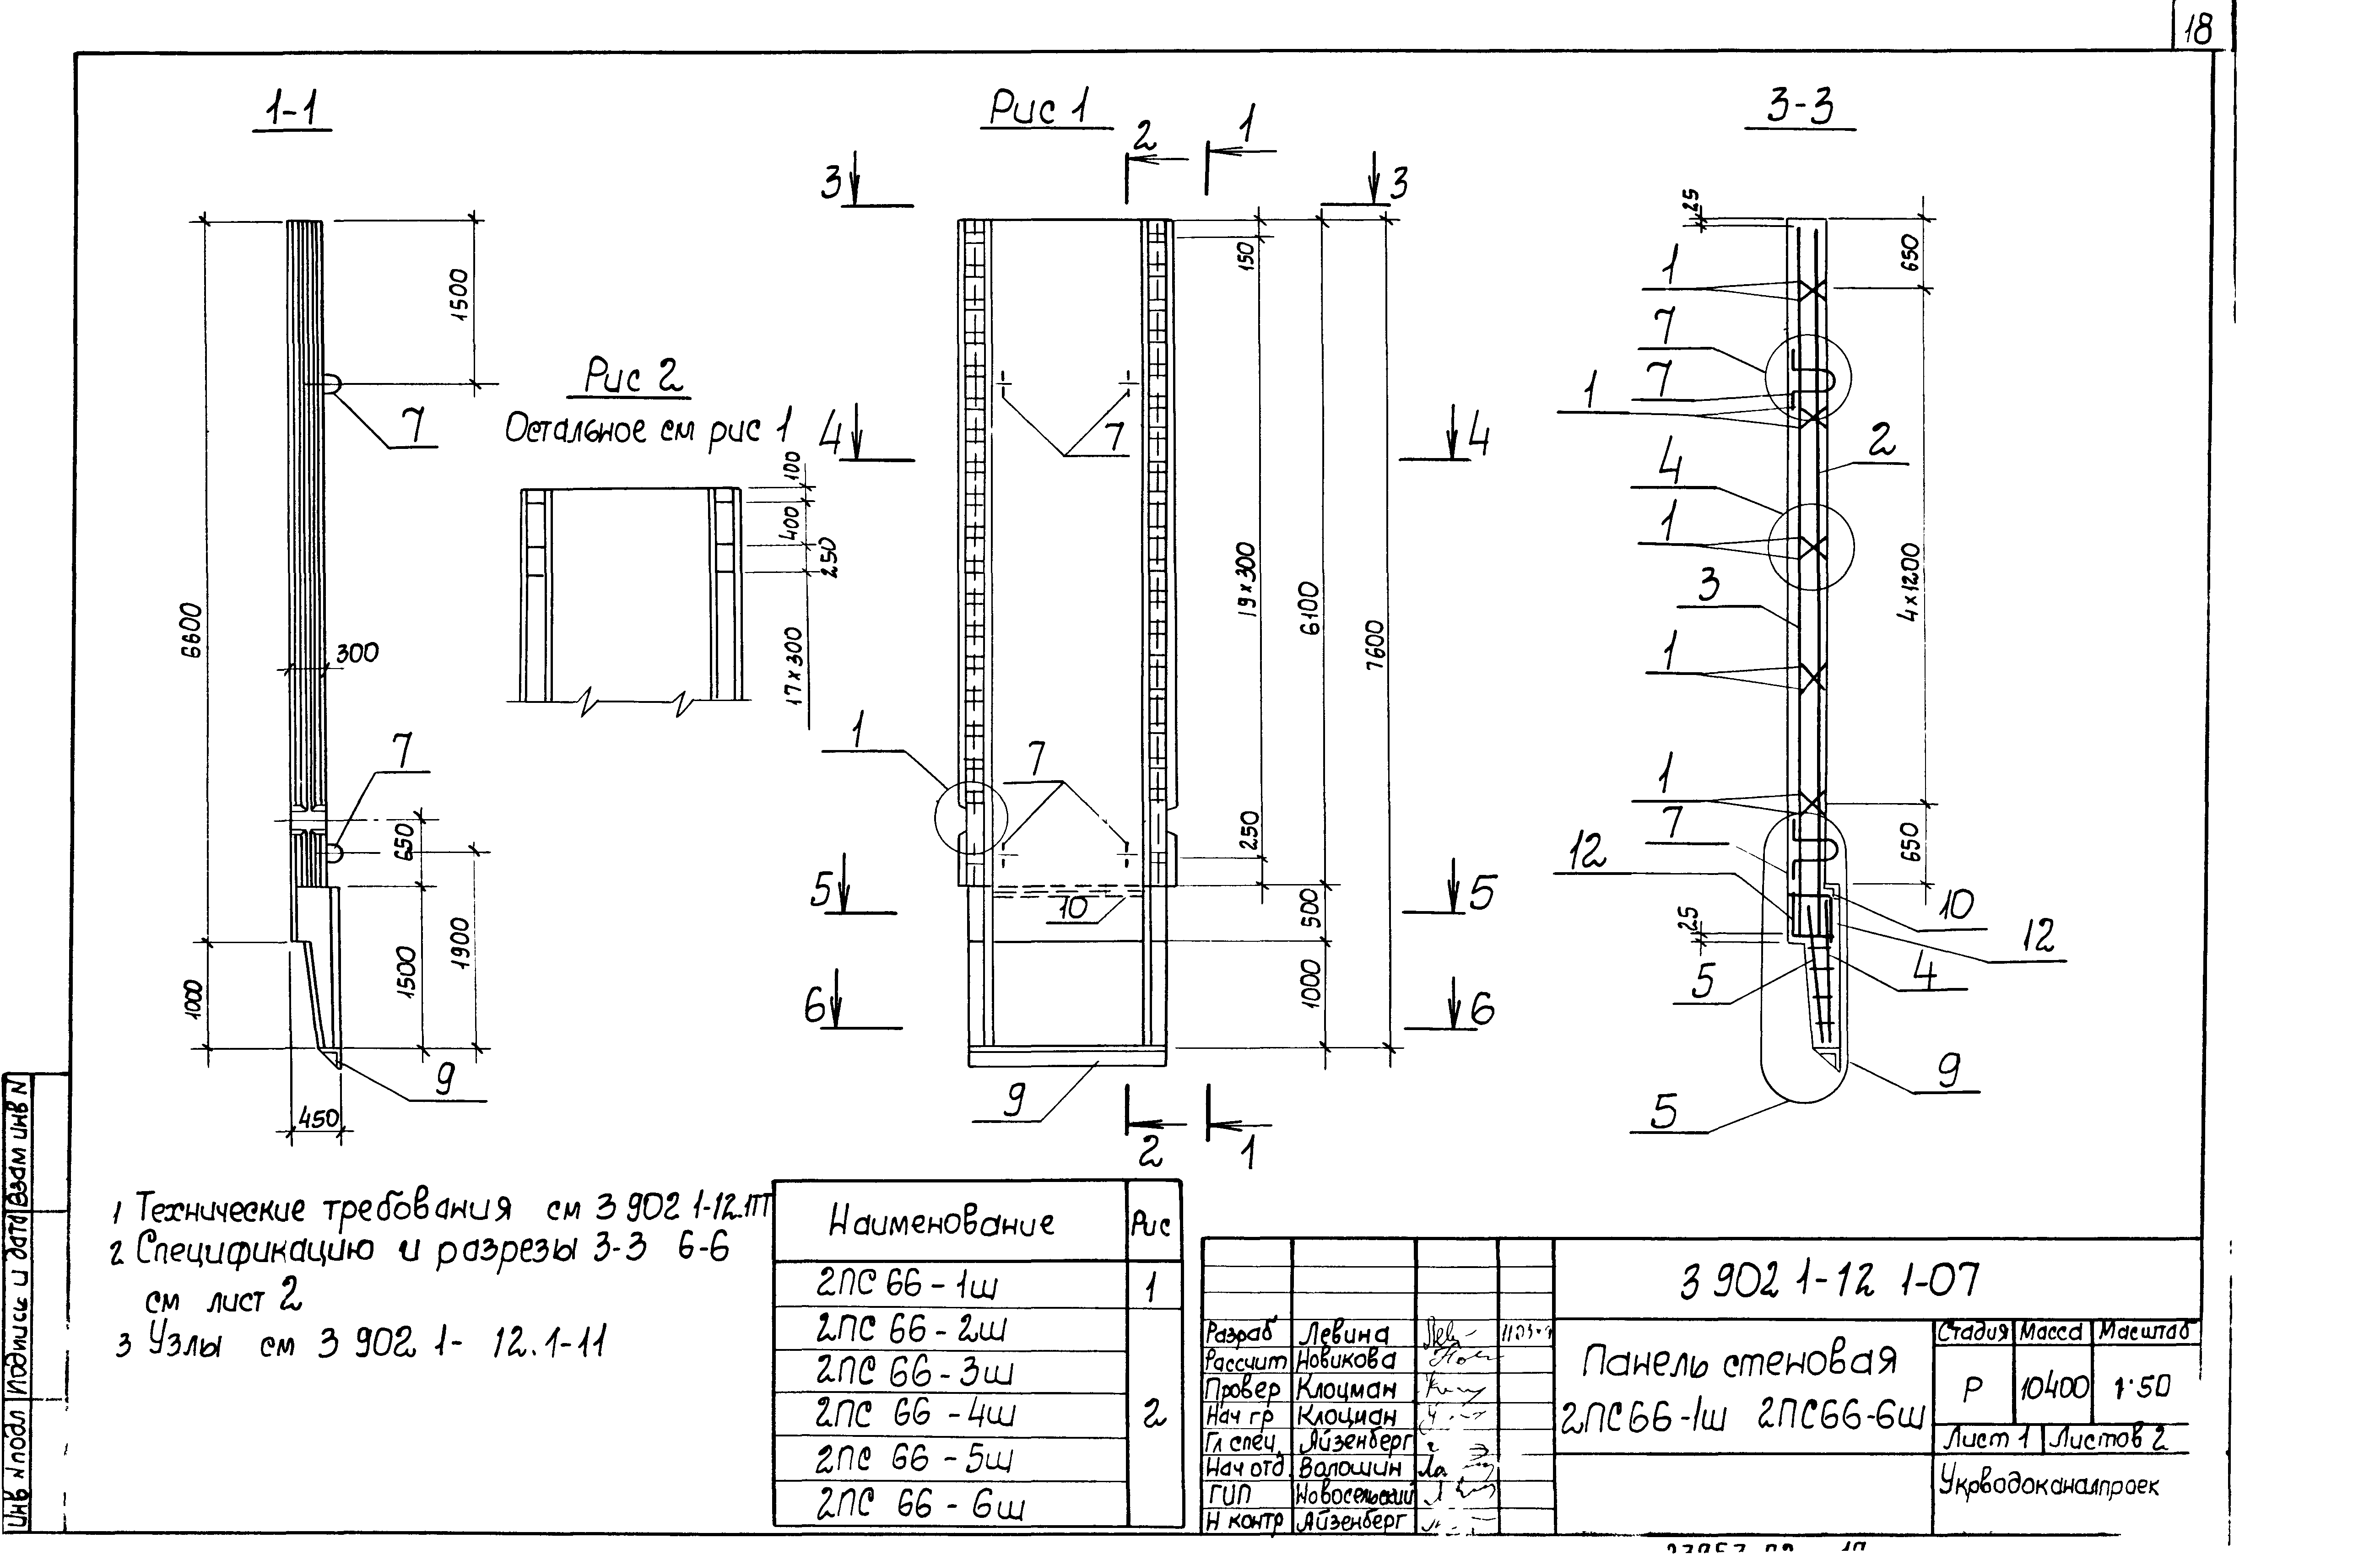 Панель стеновая 2ПС66-1ш Серия 3.902.1-12, вып.1